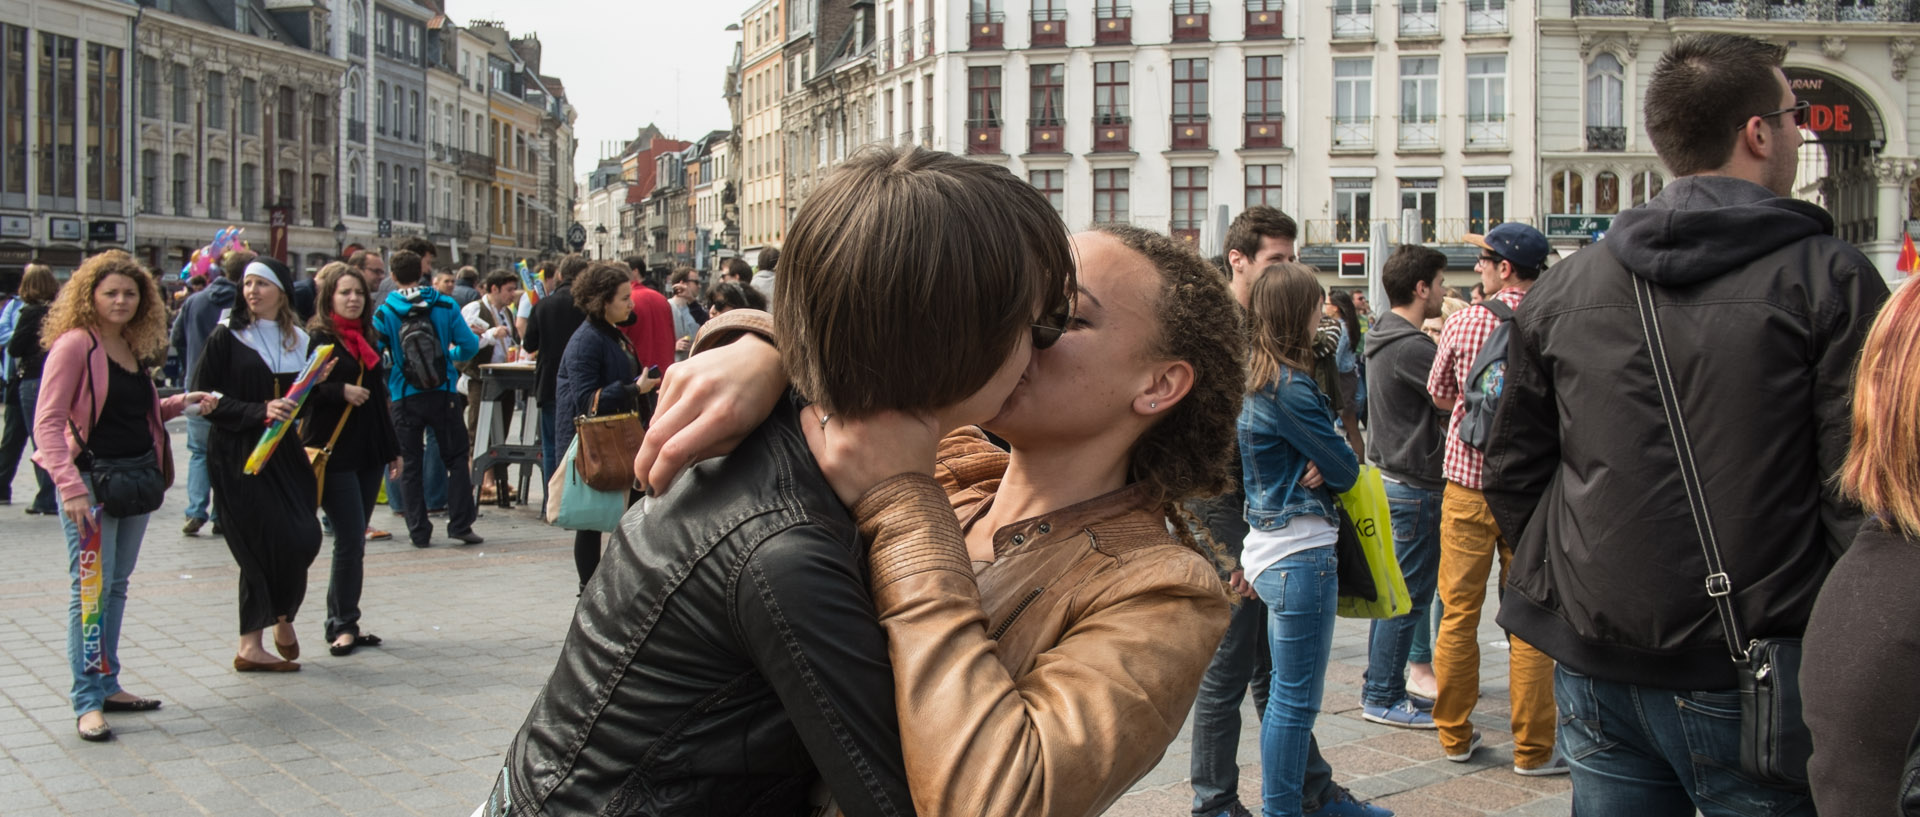 Samedi 1er juin 2013, 16:12, défilé de la lesbian et gay pride, place du Général-de-Gaulle, Lille